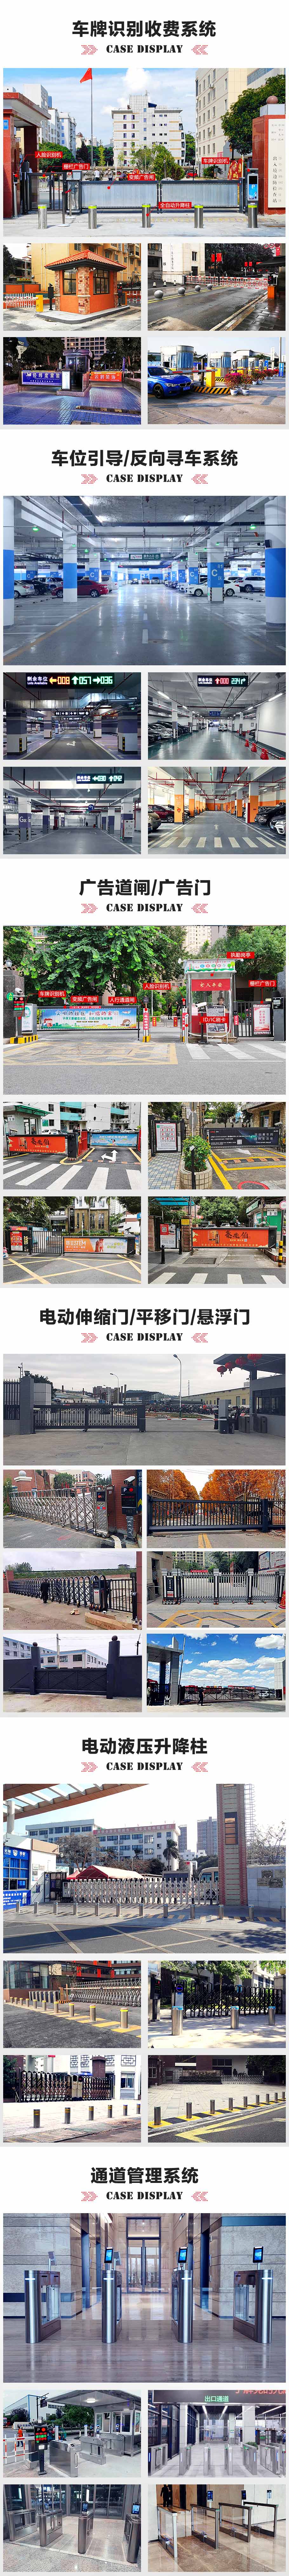 廣州白云國際機場P5停車場車牌識別系統